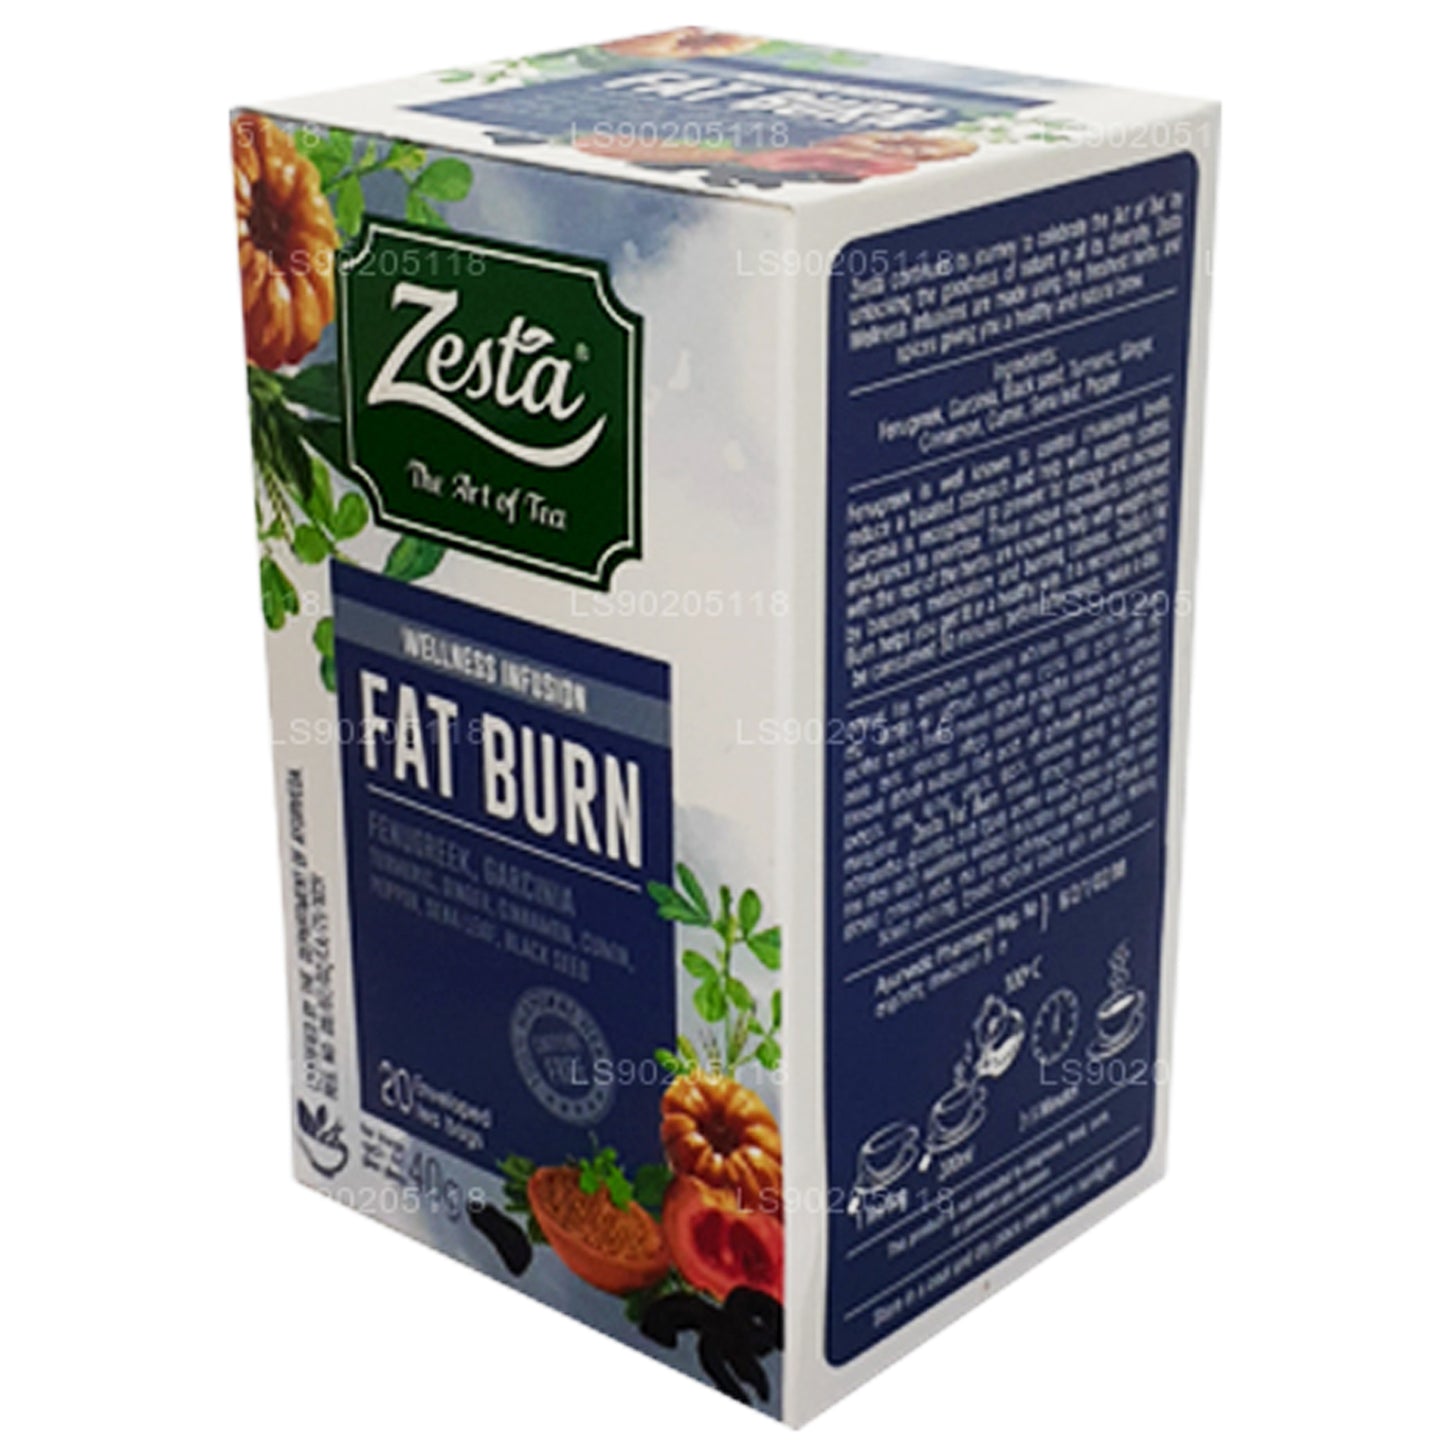 Zesta Fat Burn (40g) 20 茶包